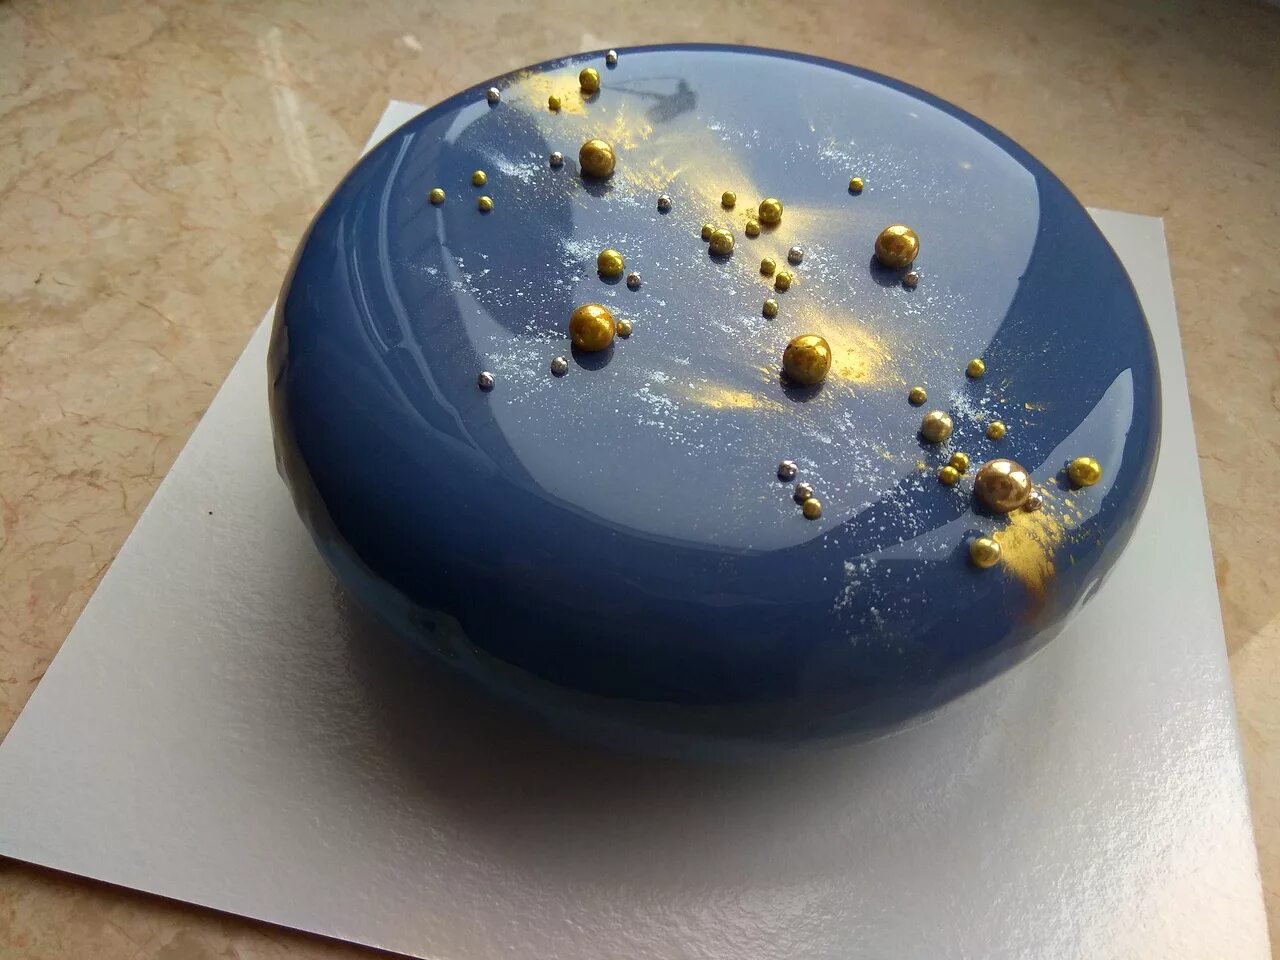 Муссовый торт Эклипс. Муссовые торты Эклипс. Муссовый торт космос. Муссовый торт Эклипс с зеркальной глазурью.